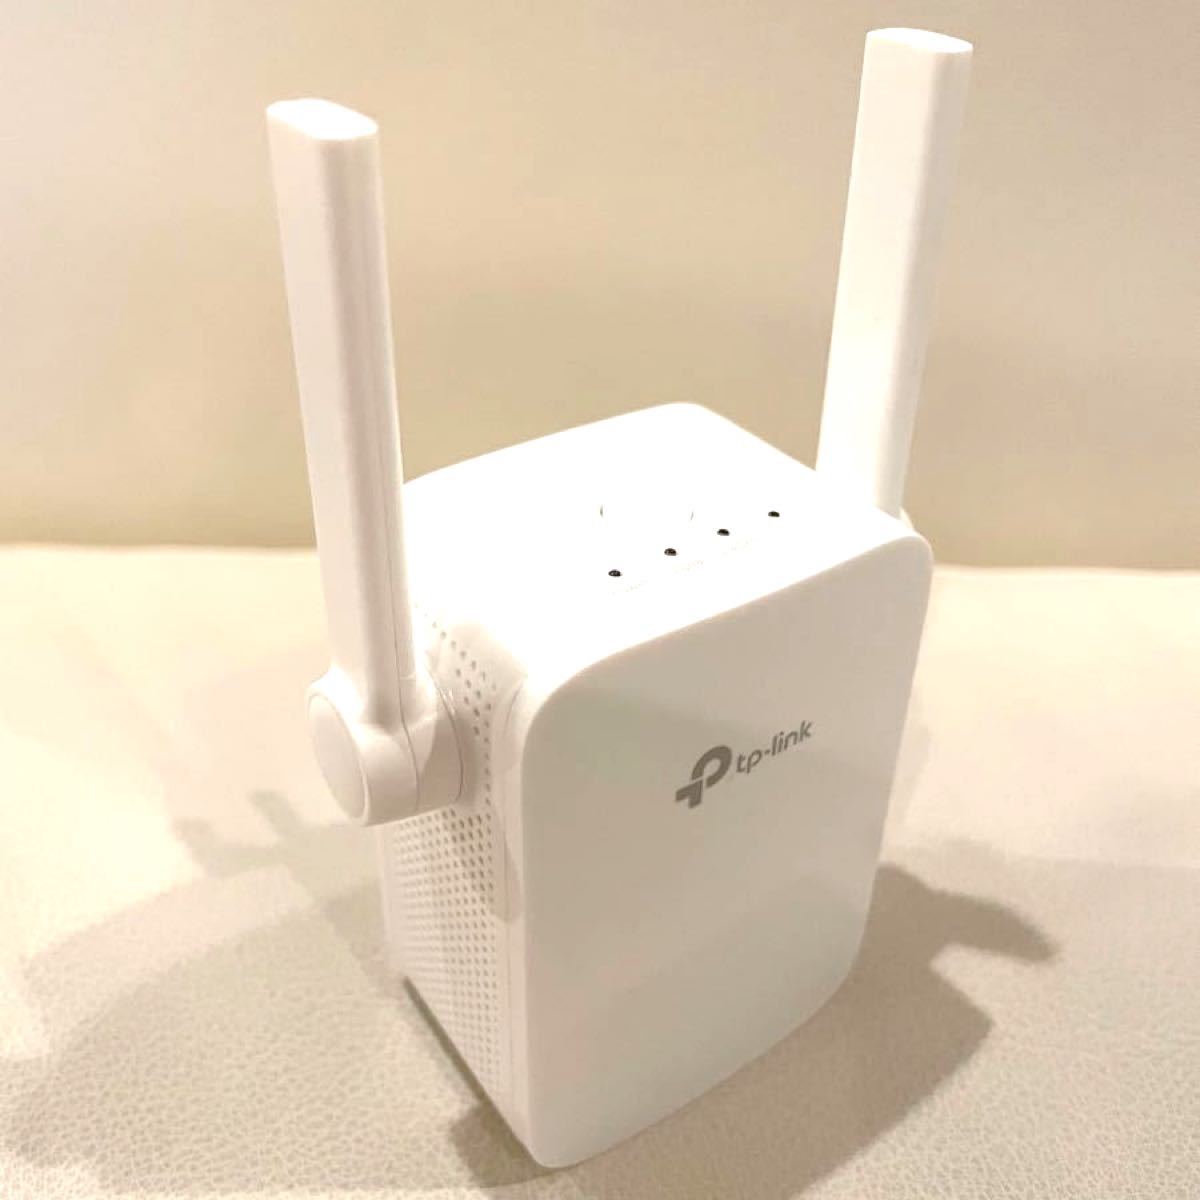 Wi-Fi無線LAN中継機 TP-LINK RE305V3 デュアルバンド対応